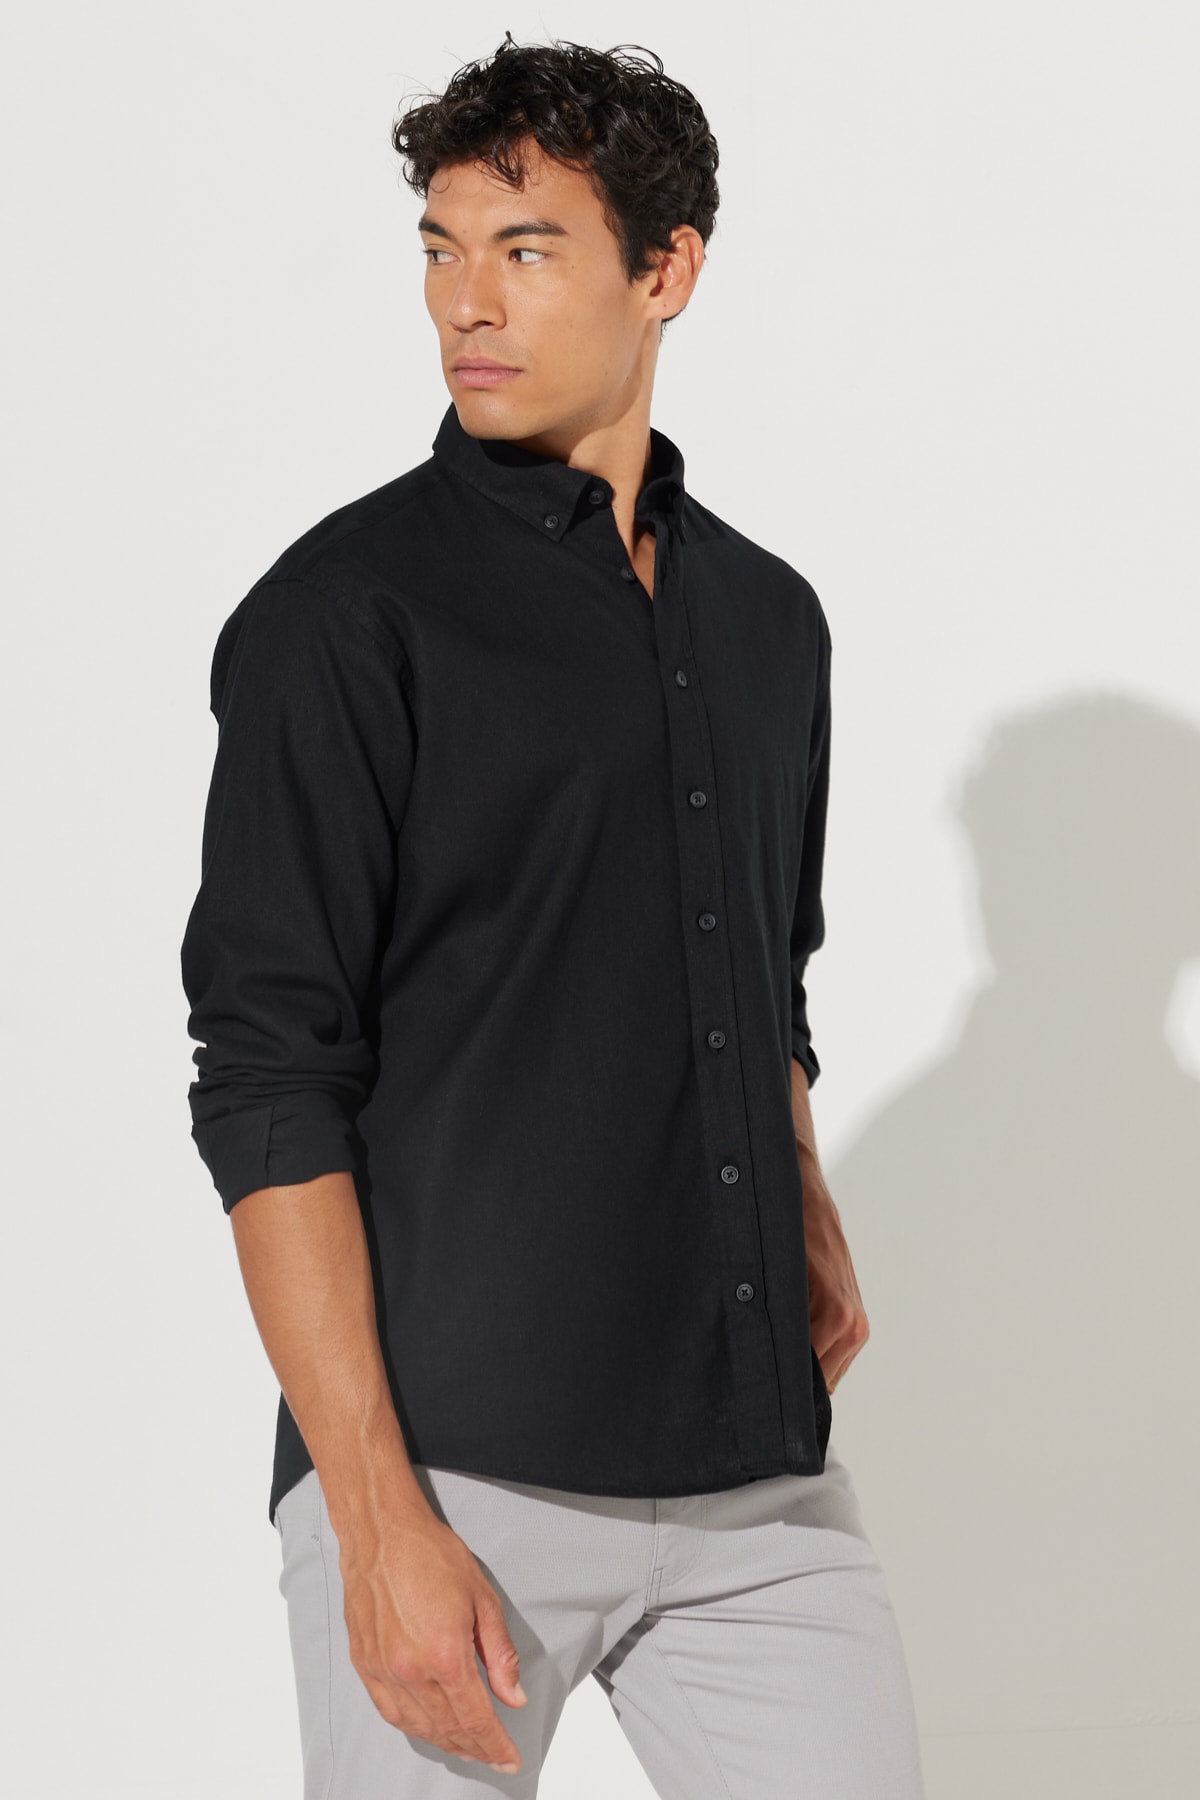 Levně ALTINYILDIZ CLASSICS Men's Black Comfort Fit Comfy Cut Buttoned Collar Linen Shirt.